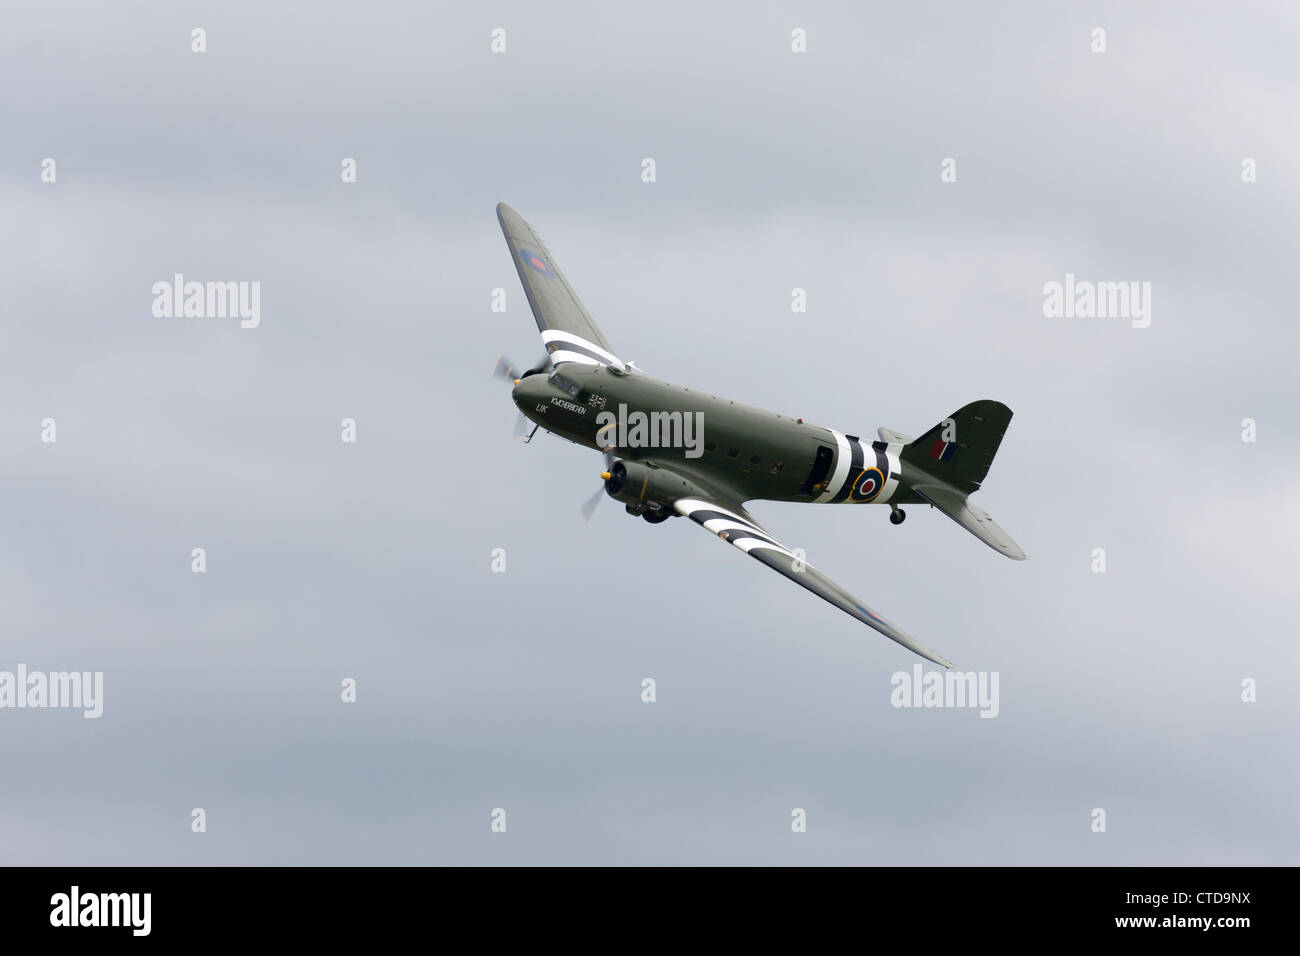 Dakota aircraft hi-res stock photography and images - Alamy